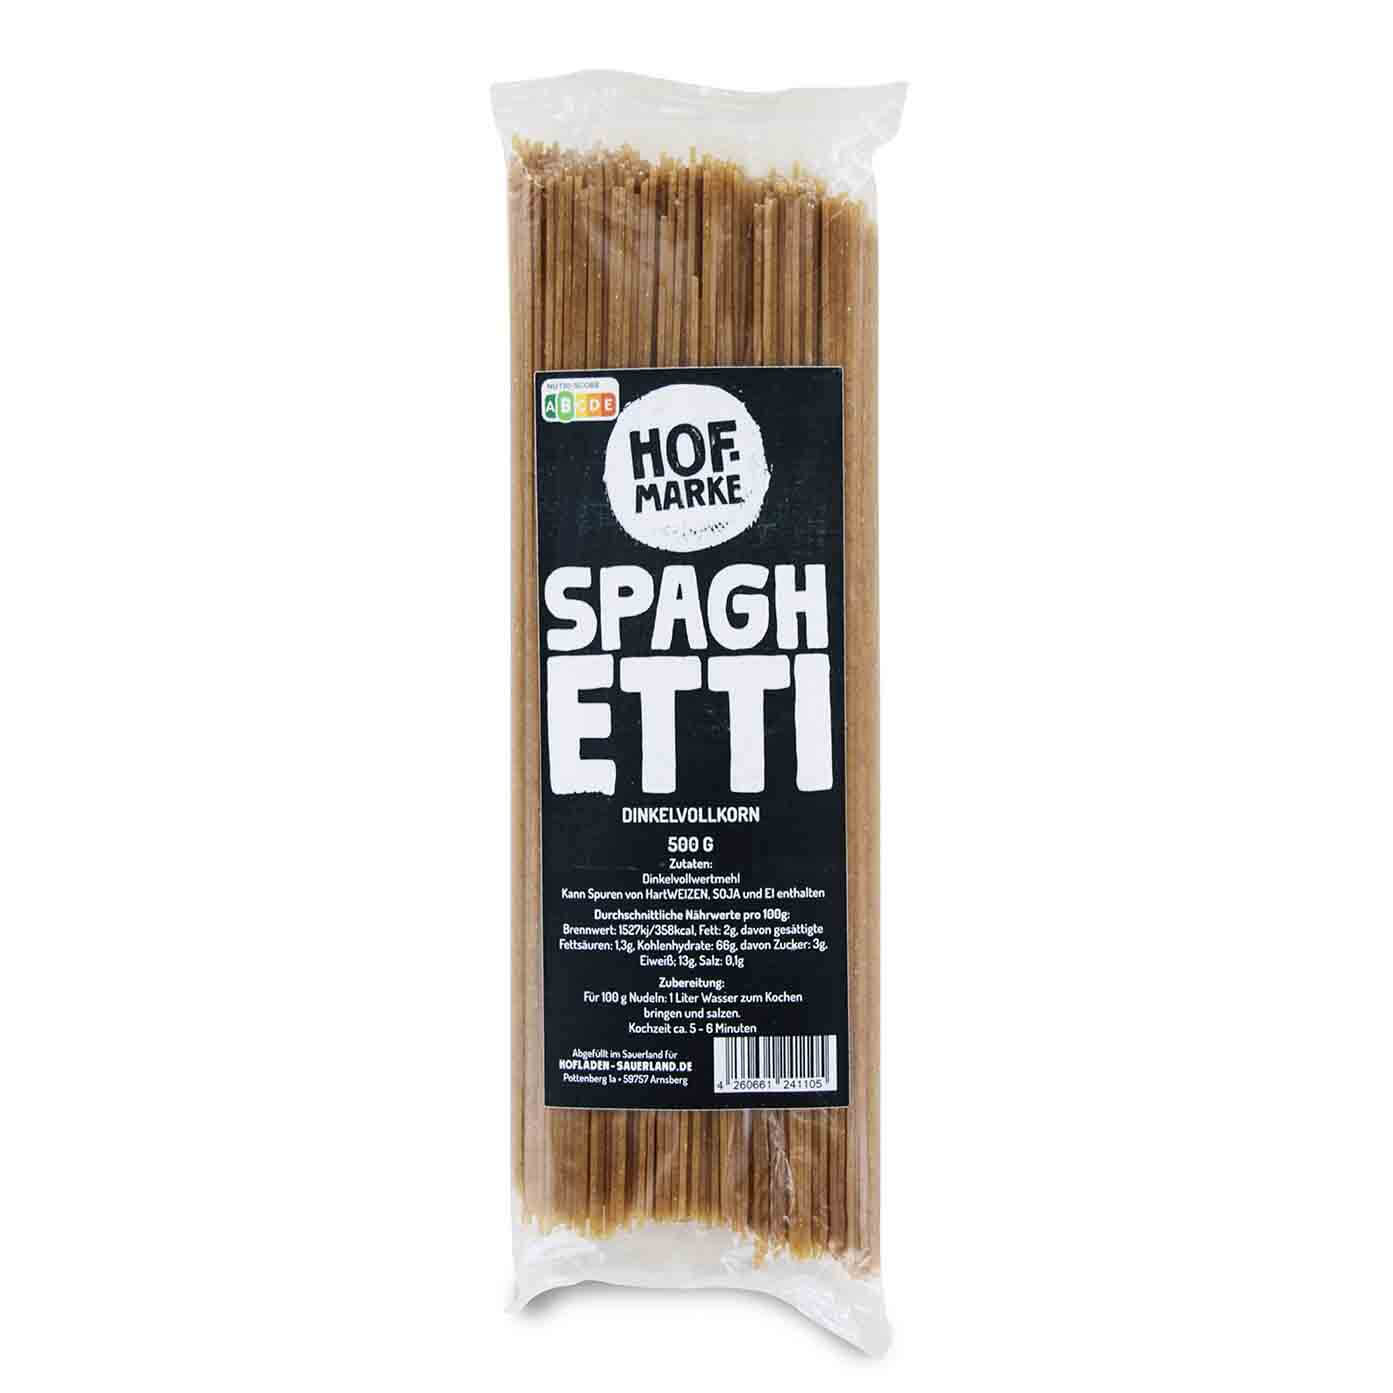 Dinkelvollkorn Spaghetti von unserer Hofmarke-zoom-mobil